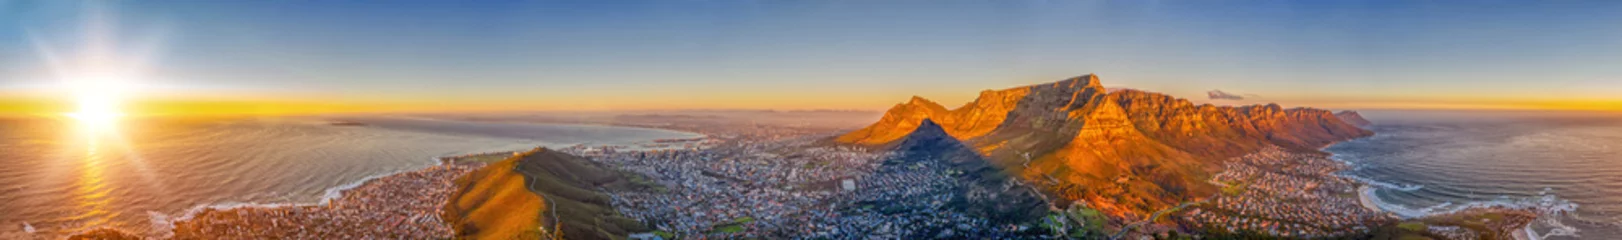 Photo sur Plexiglas Montagne de la Table Cape Town aerial view